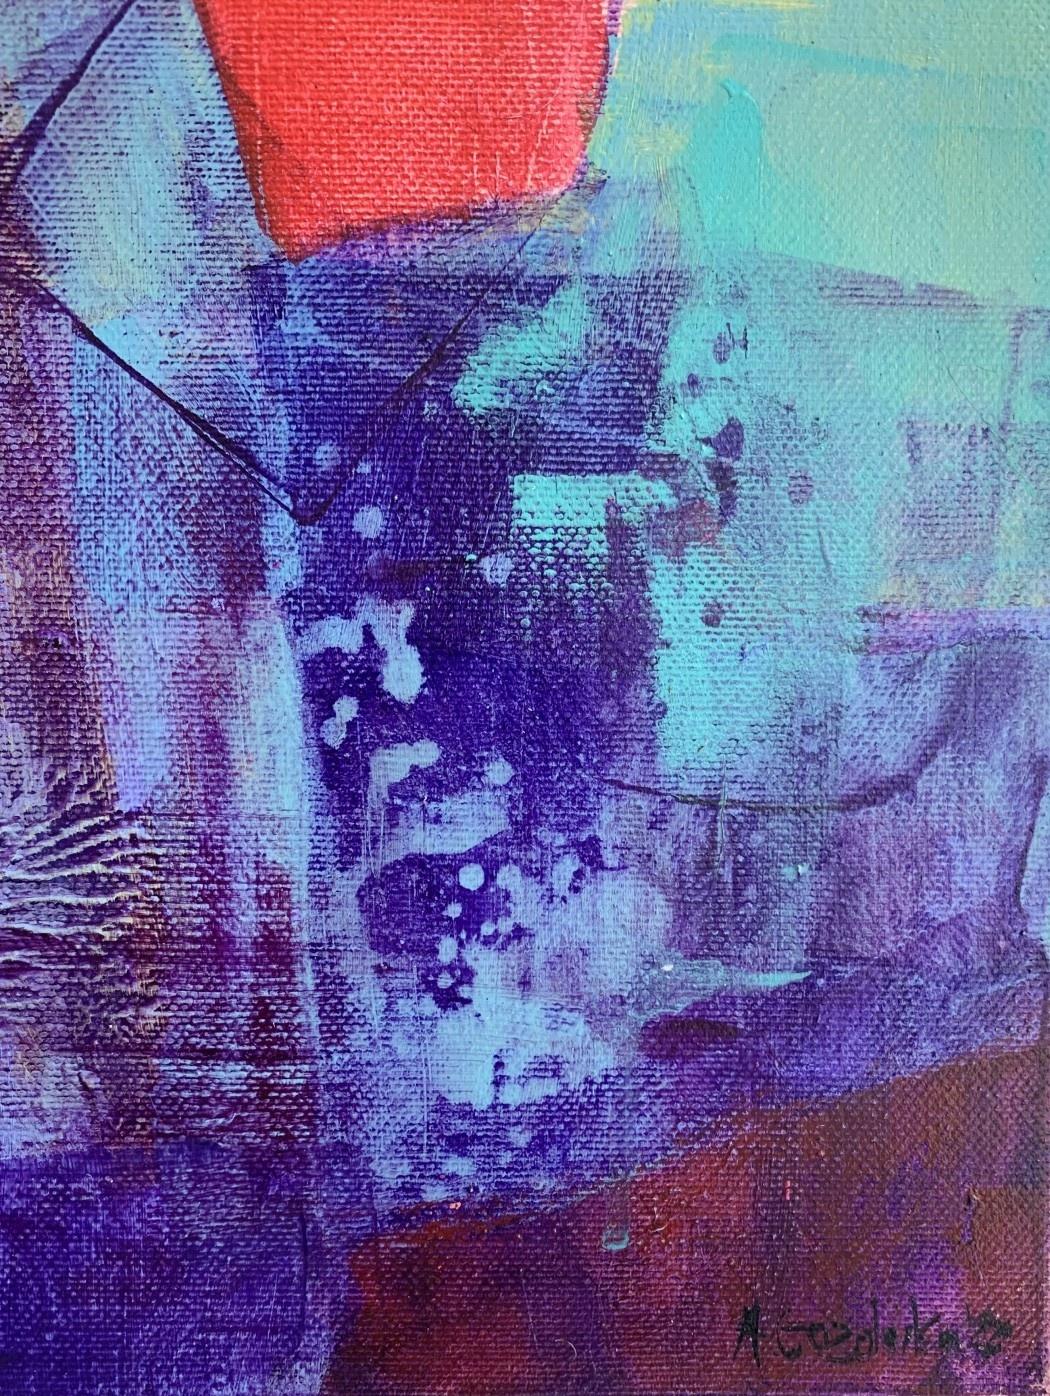 Türkisfarbener Ufer – zeitgenössische abstrakte Malerei Acrylfarben, polnischer Künstler (Grau), Abstract Painting, von Anna Masiul-Gozdecka